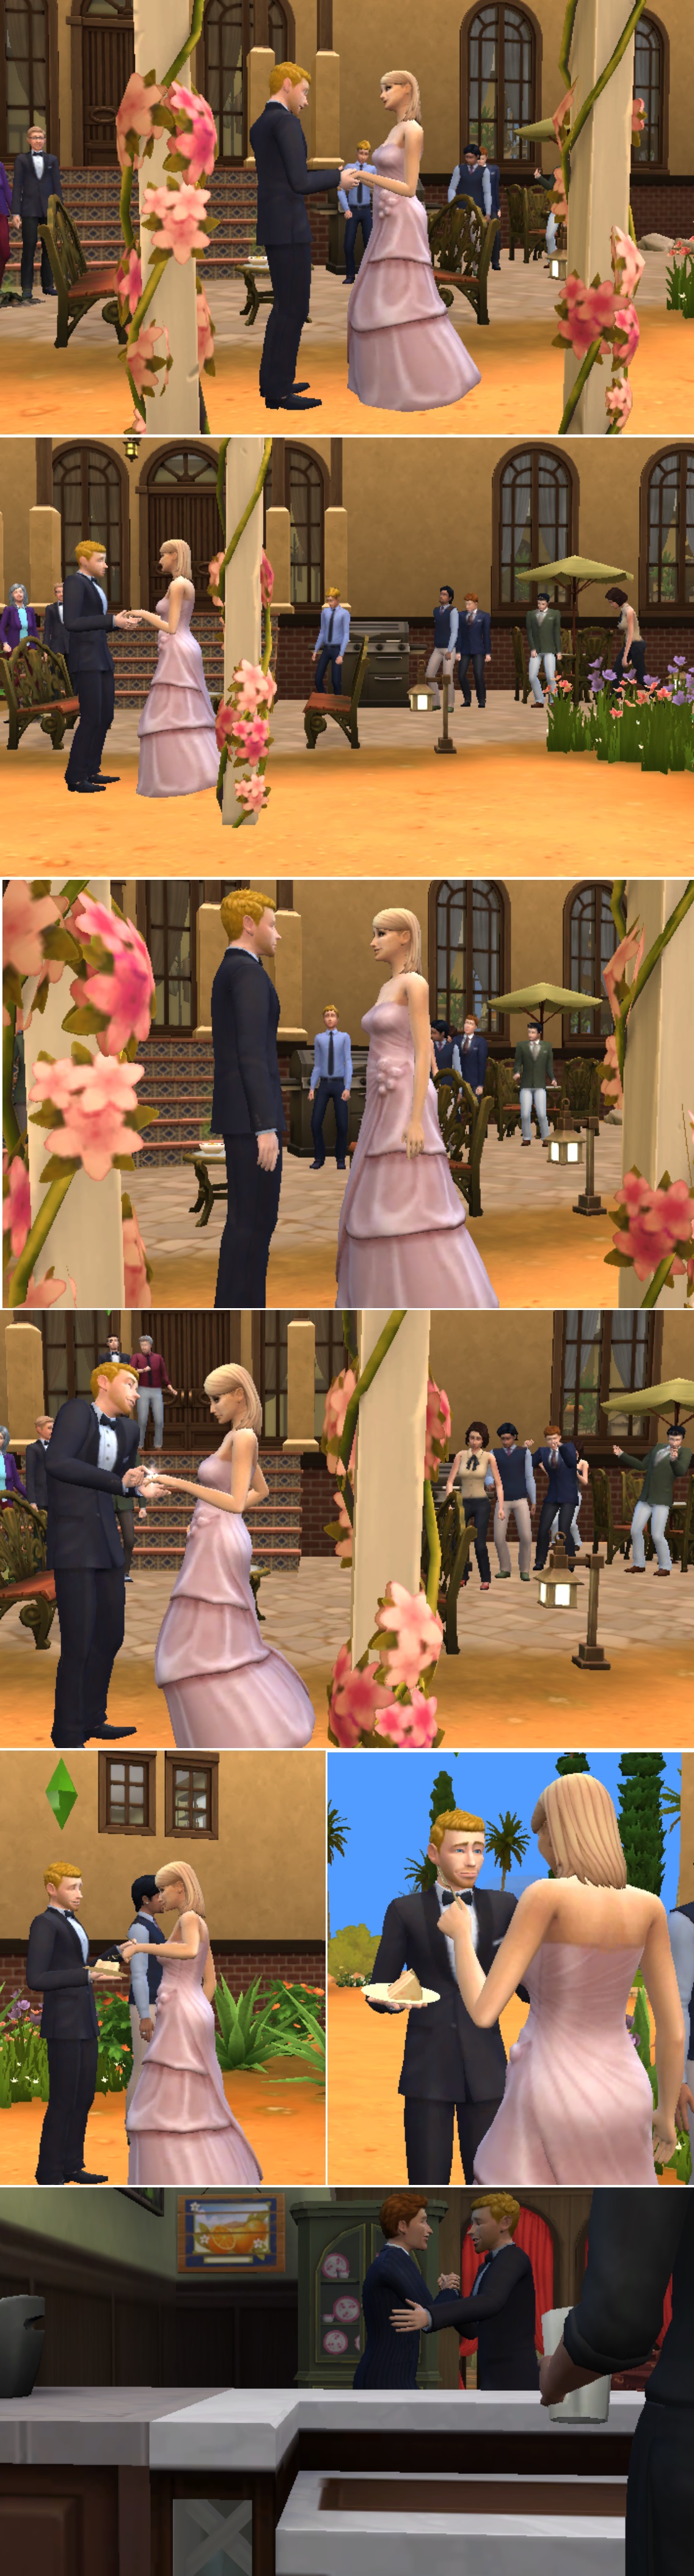 Sims4-38.jpg